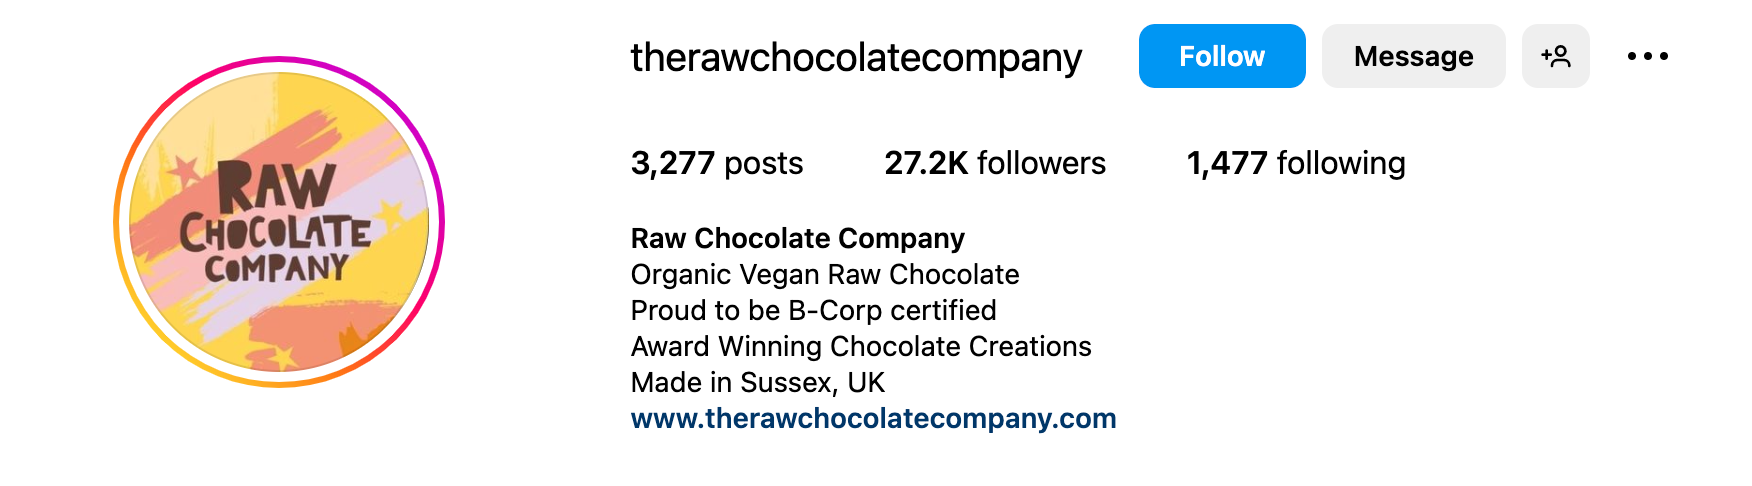 Instagram bio ideas - raw chocolate co